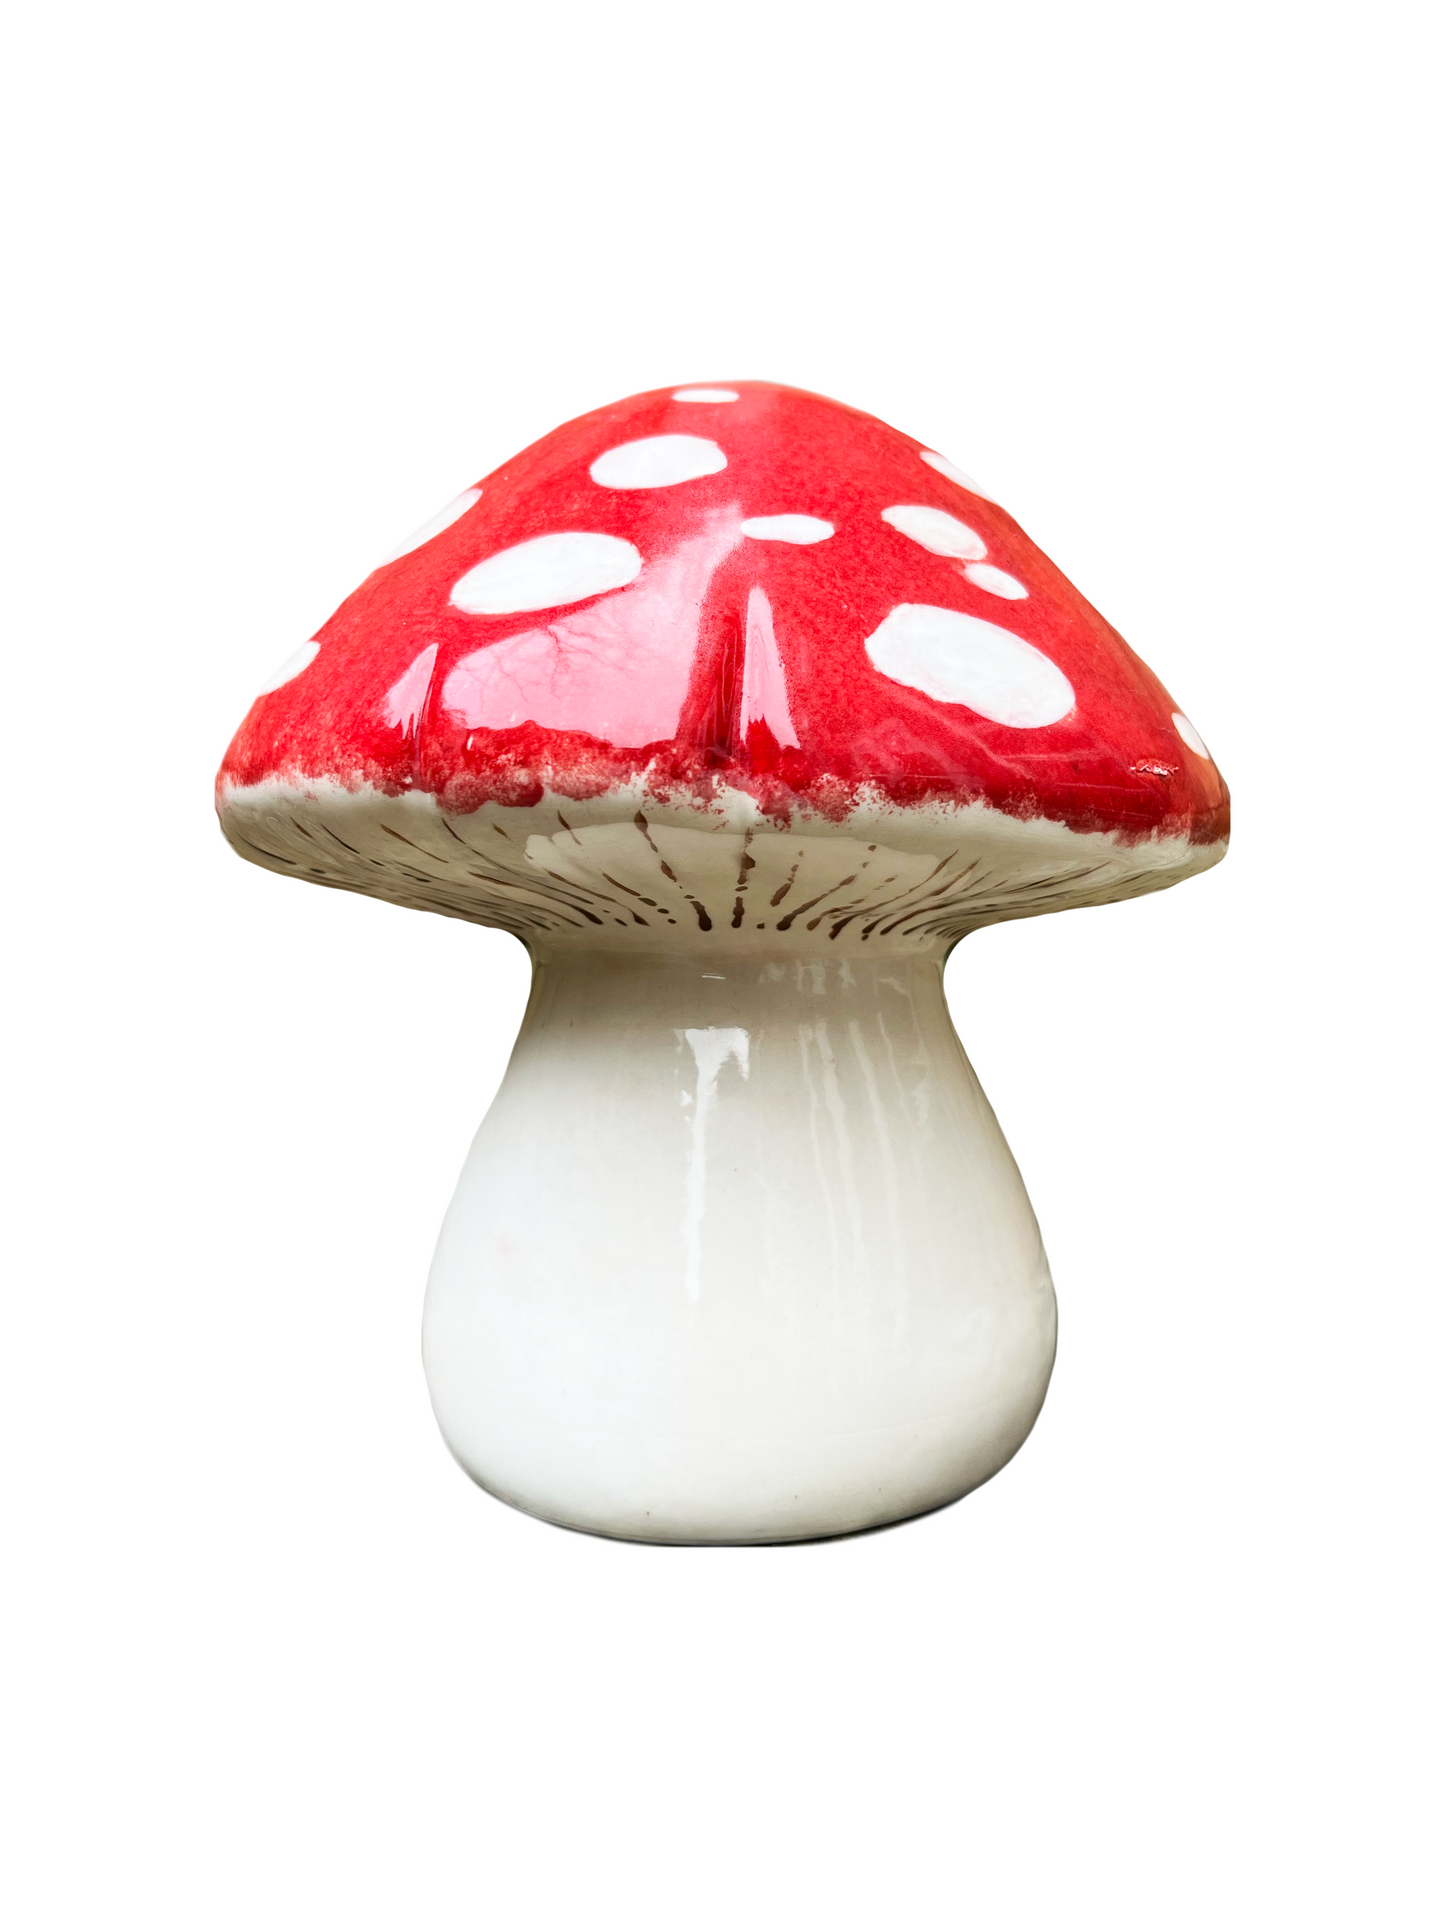 Ceramic Toadstool Mushroom